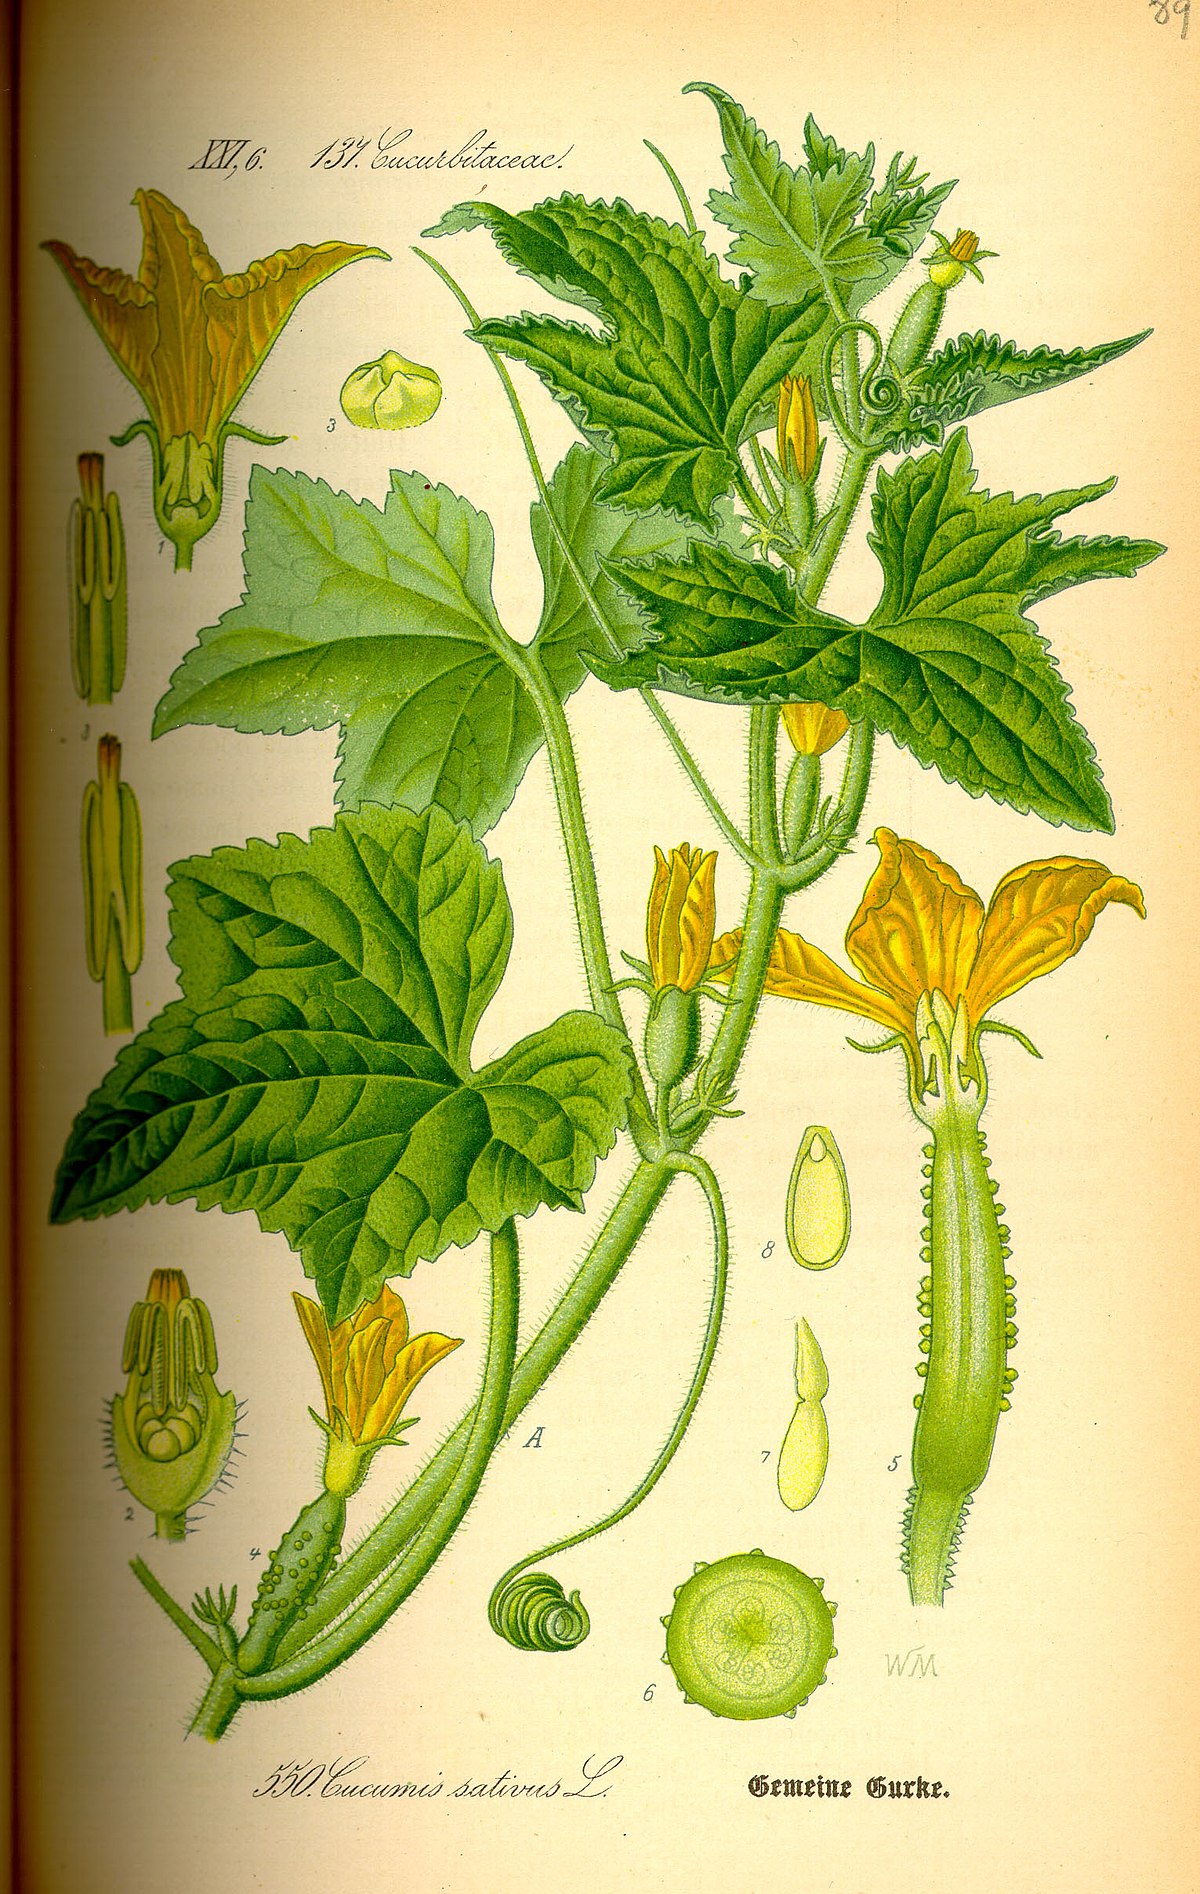 Historique du concombre, informations sur la plante, faits